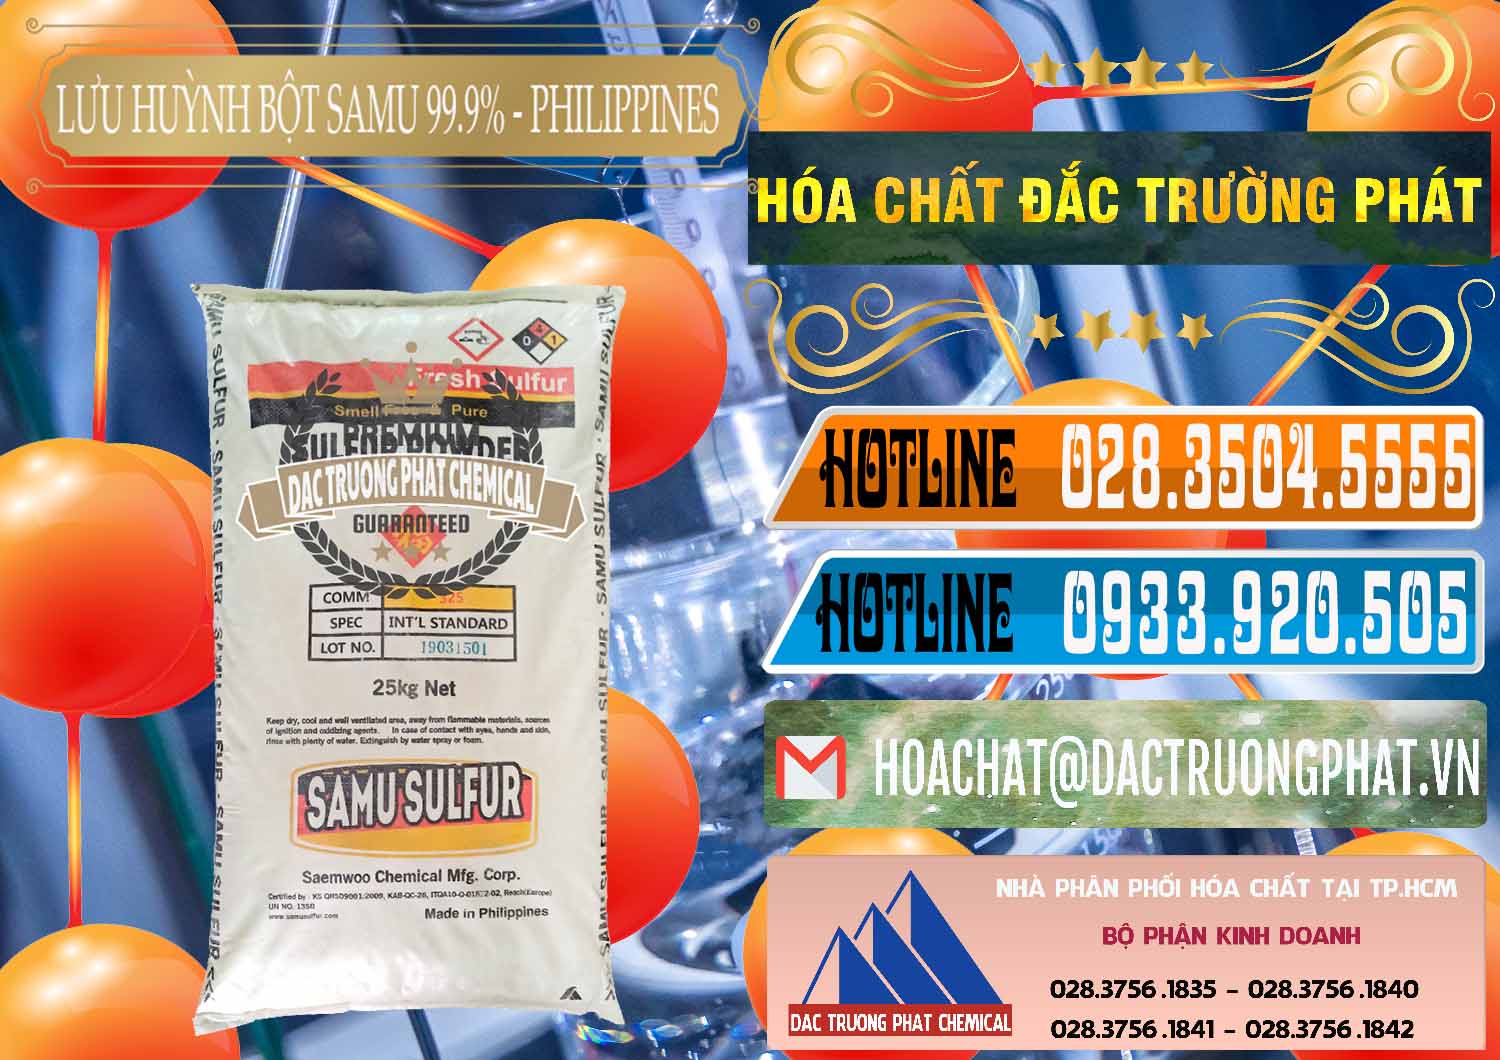 Chuyên bán và phân phối Lưu huỳnh Bột - Sulfur Powder Samu Philippines - 0201 - Cty chuyên bán - phân phối hóa chất tại TP.HCM - stmp.net